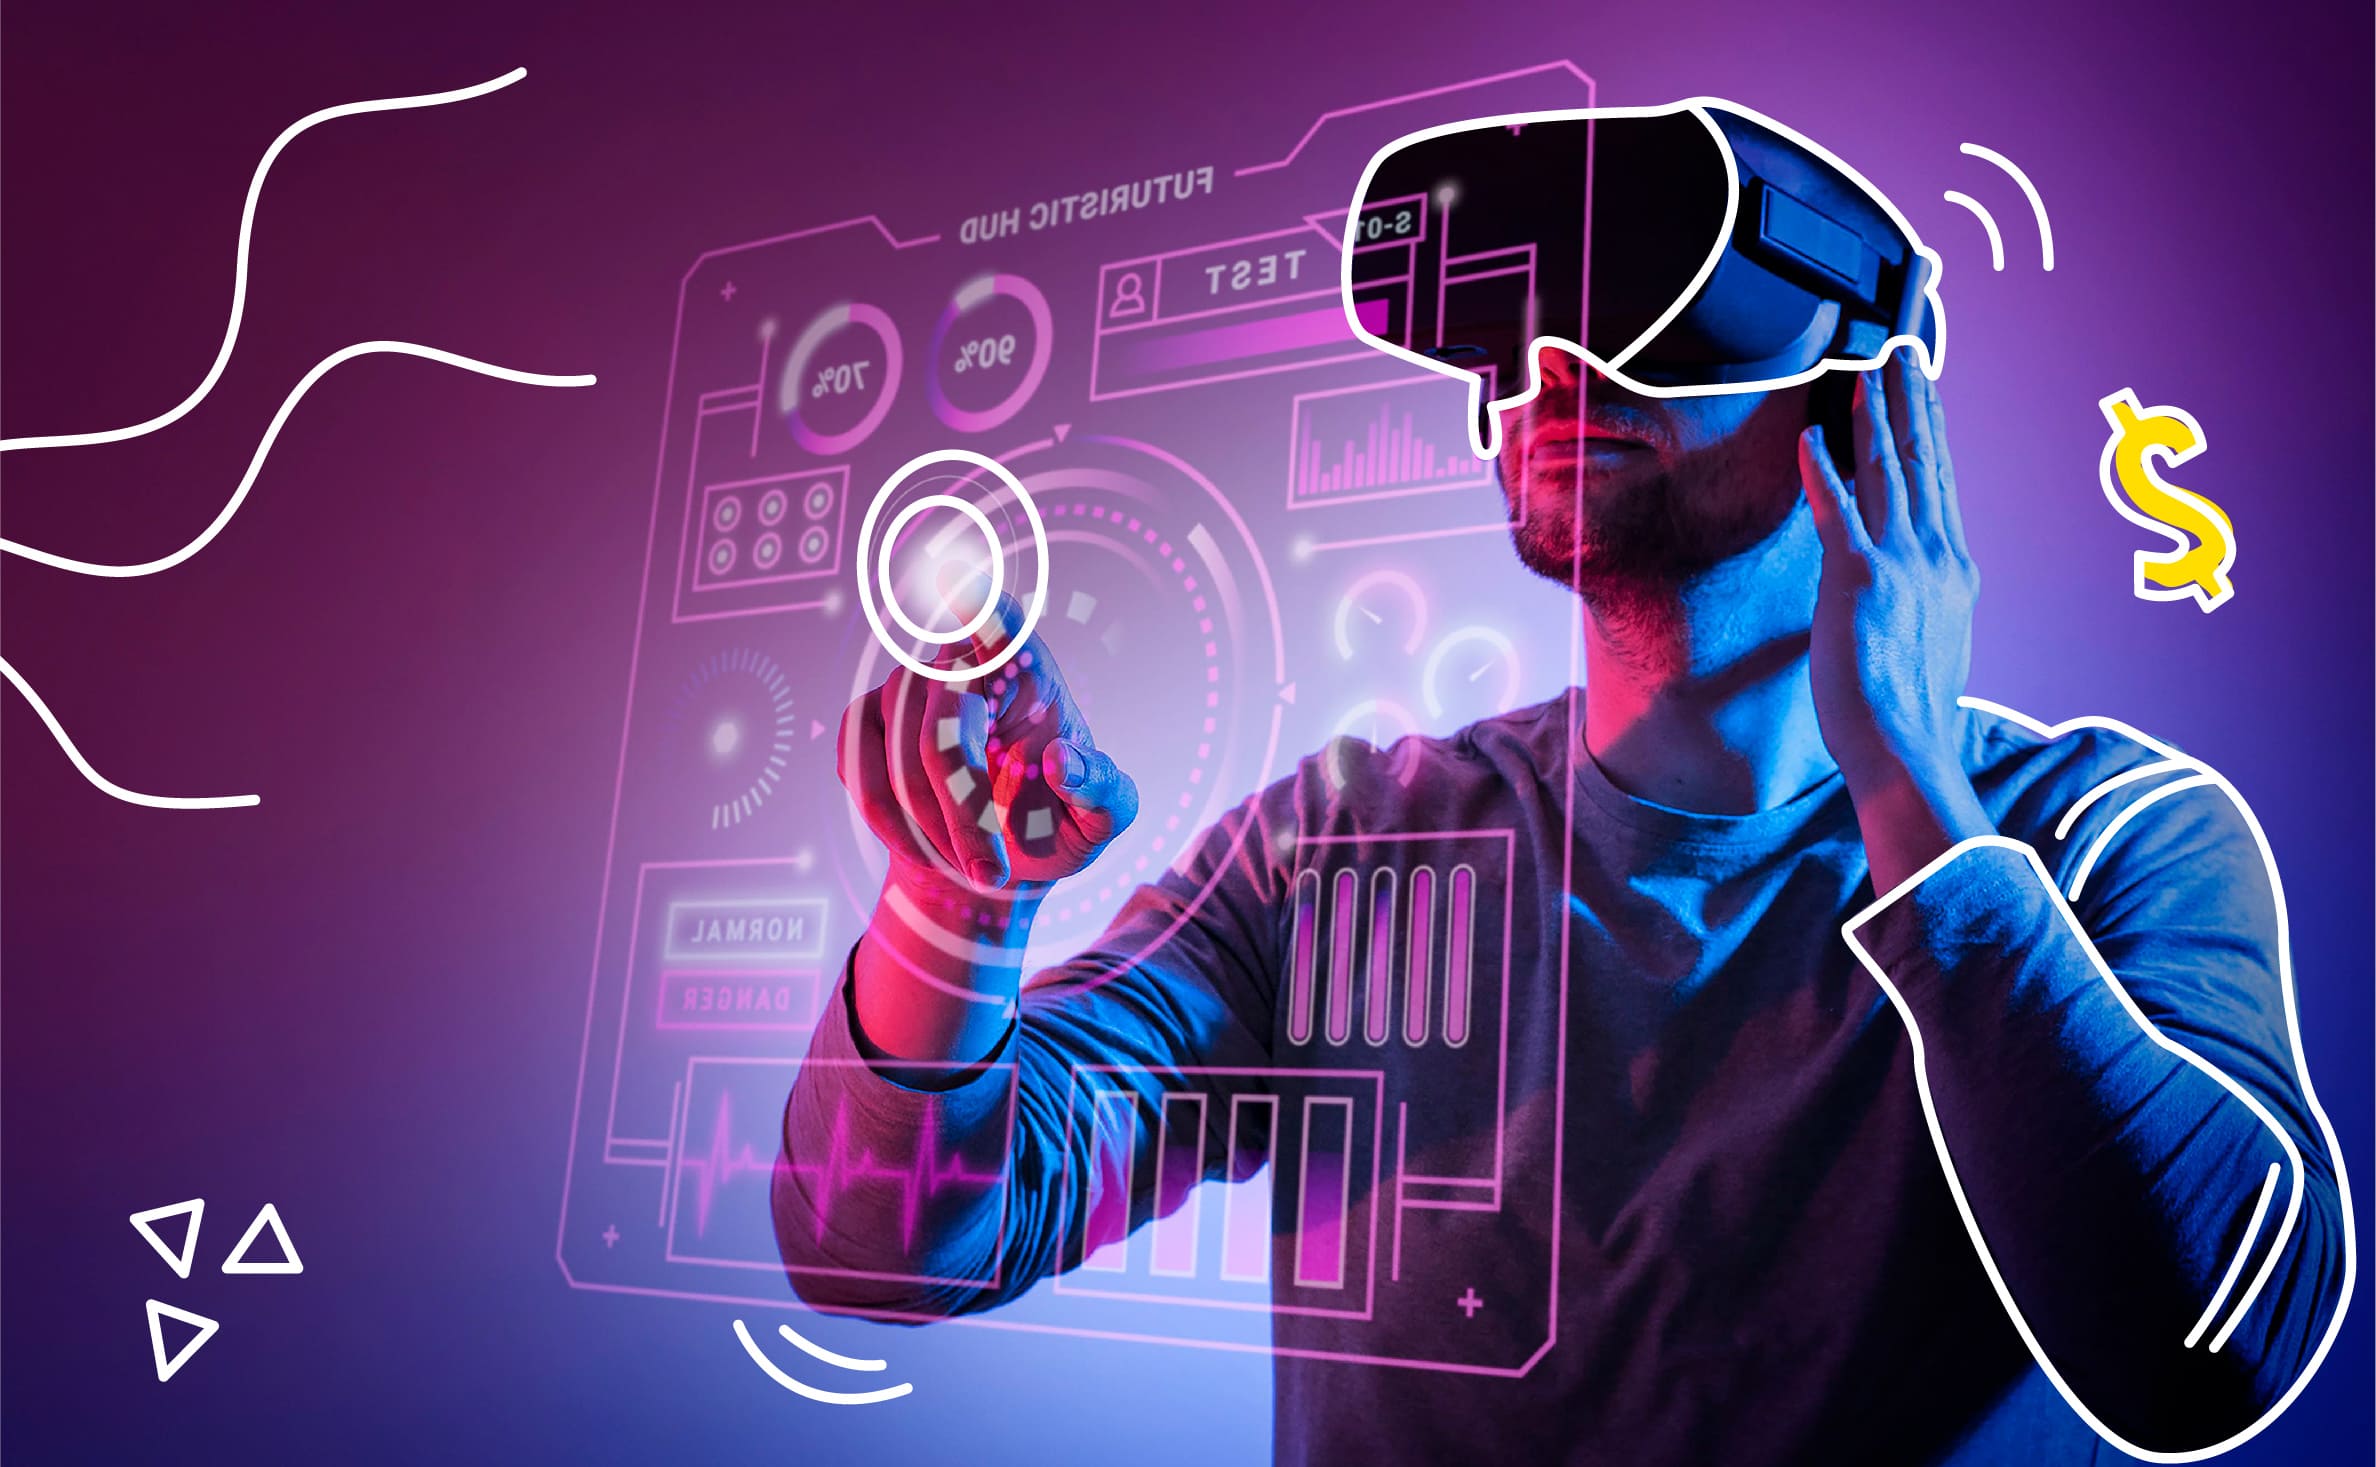 图片展示一位男士戴着虚拟现实头盔，手持控制器，似乎在体验沉浸式科技环境，背景为数字化界面。